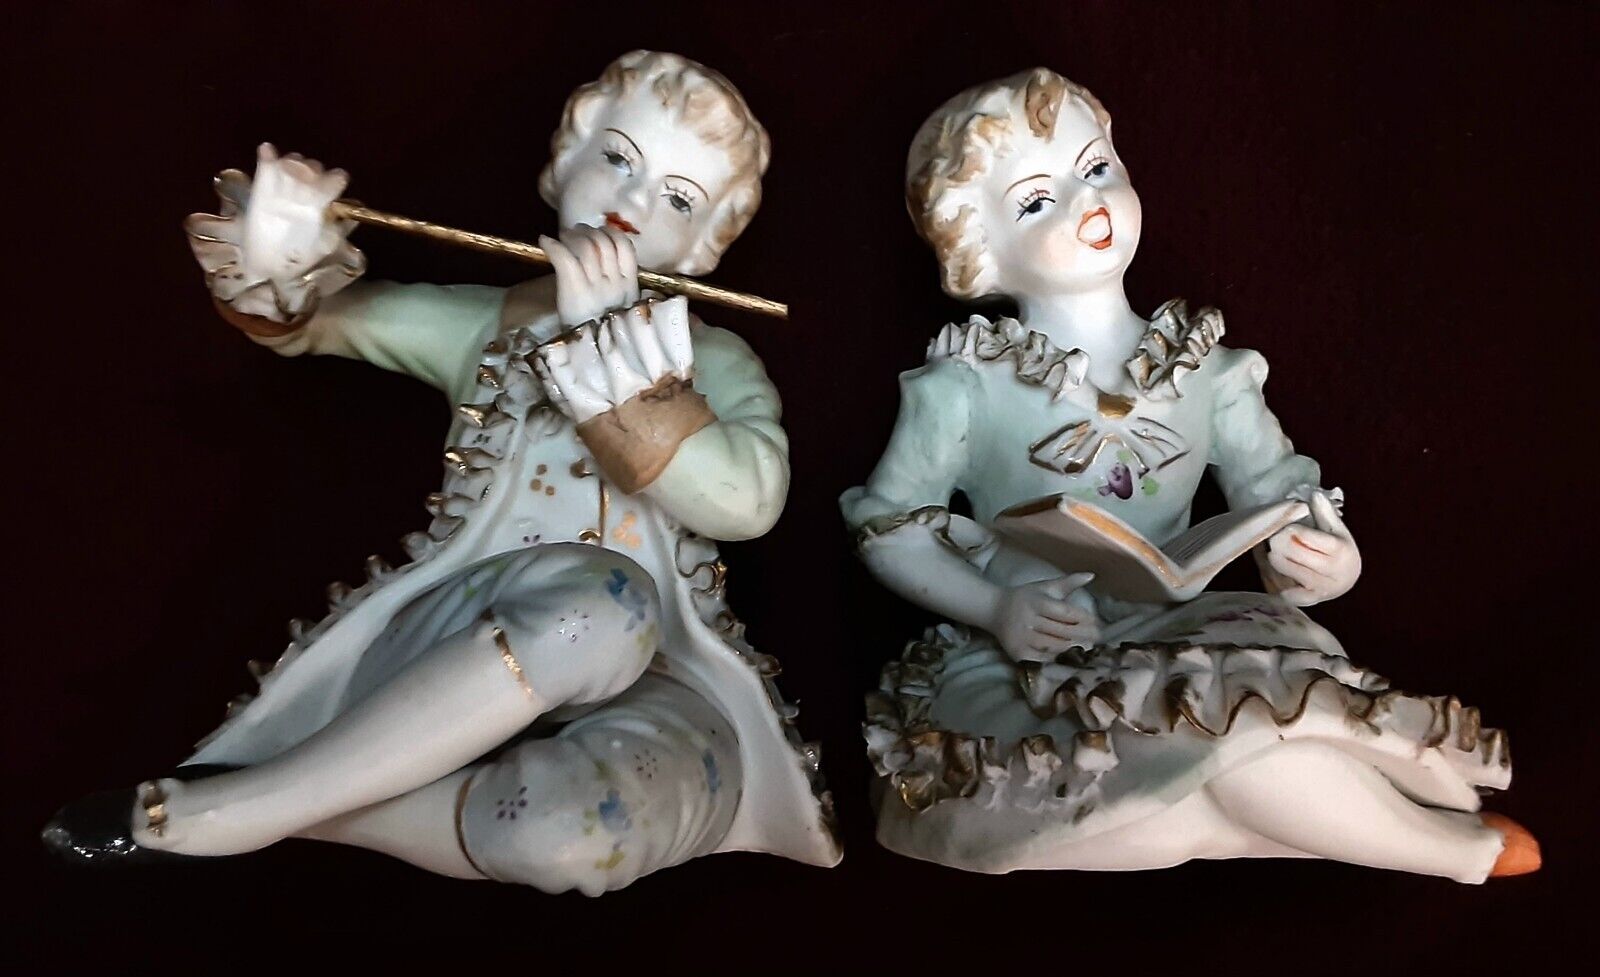 Orion Victorian Porcelain Boy Flute, Girl Sing Figurine Set~Vtg. 1940's Japan